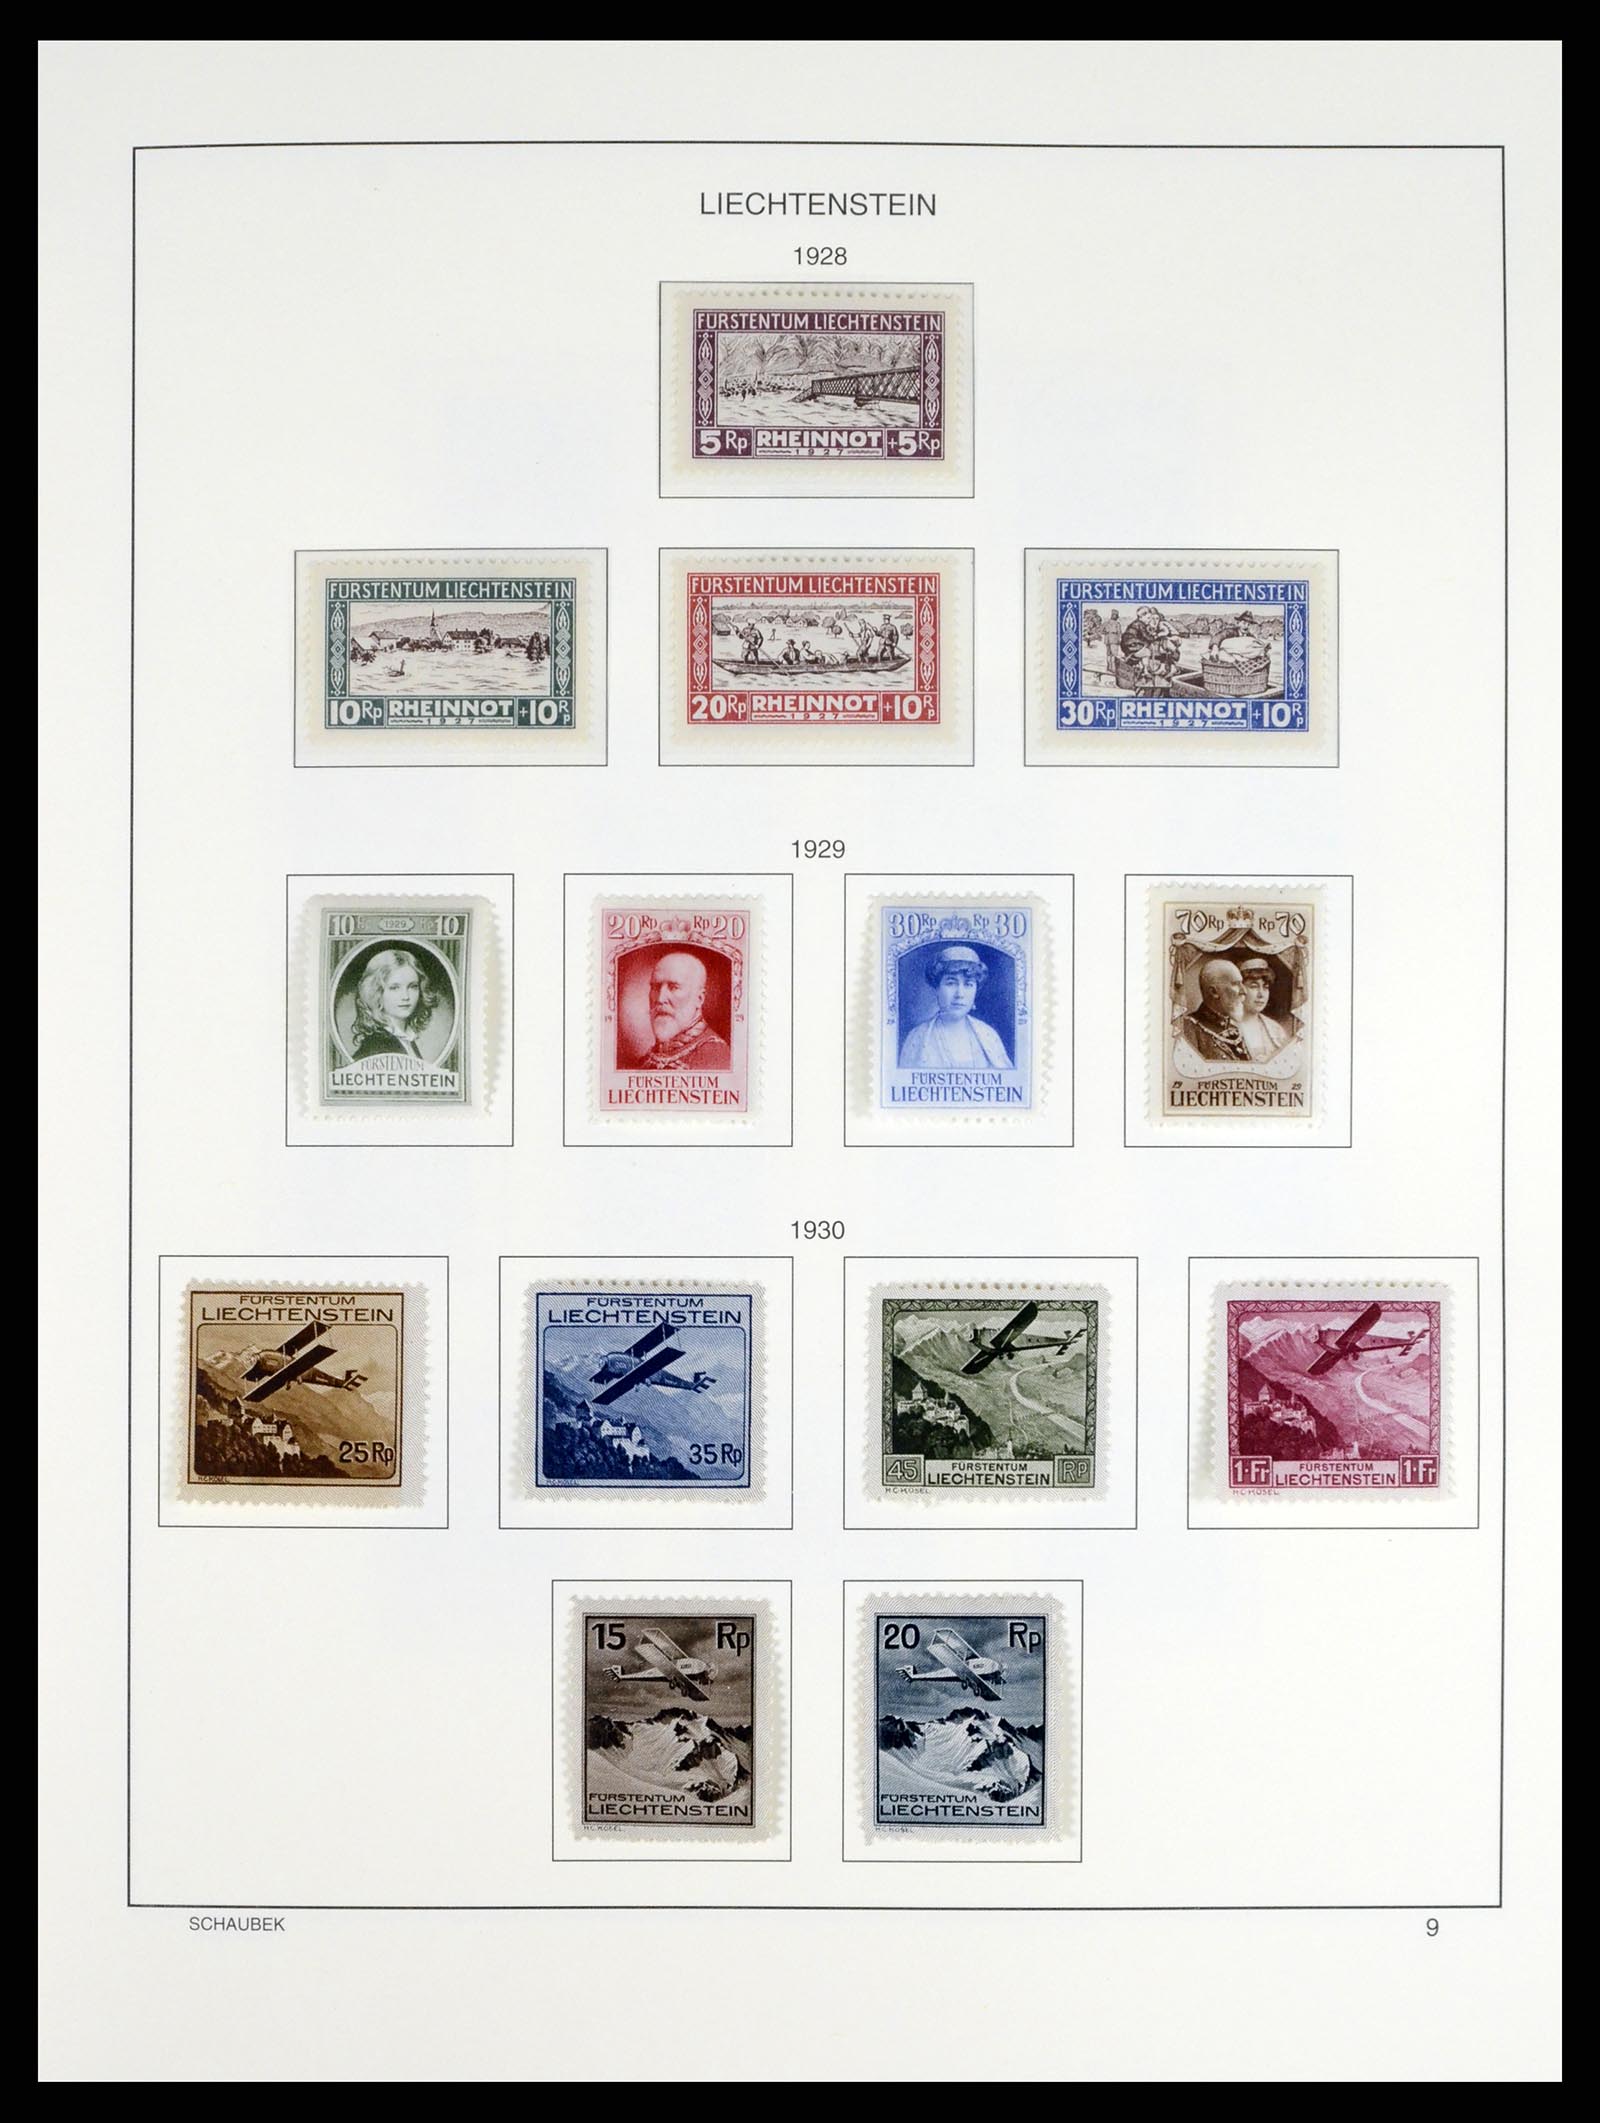 37547 009 - Stamp collection 37547 Liechtenstein 1912-2011.